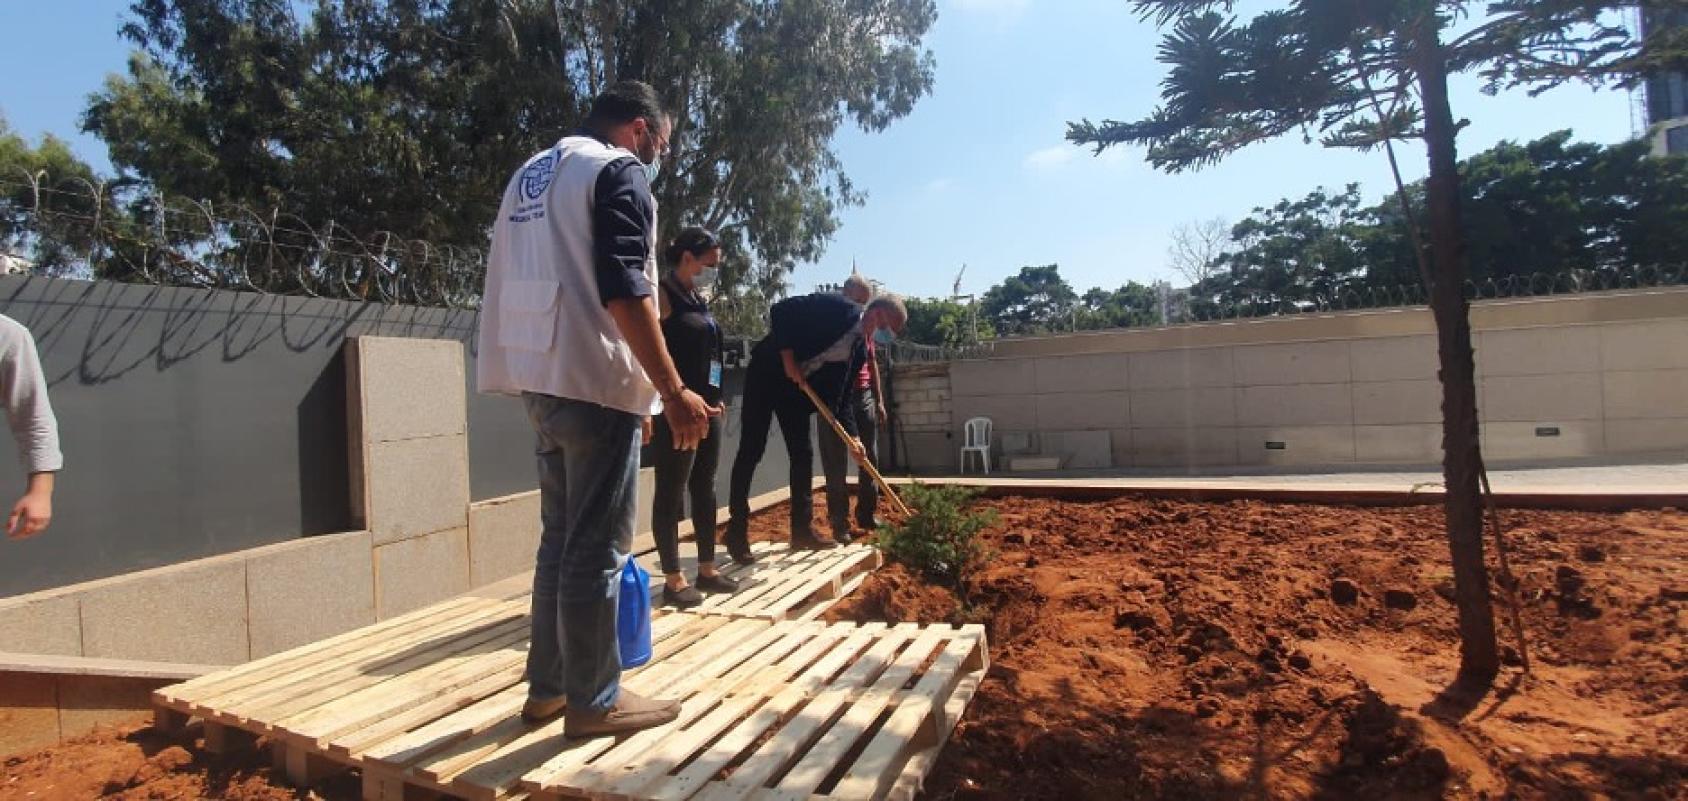 تظهر الصورة موظفي الأمم المتحدة وهم يزرعون شجرة إحياءً لذكرى مرور عام واحد على الانفجار.